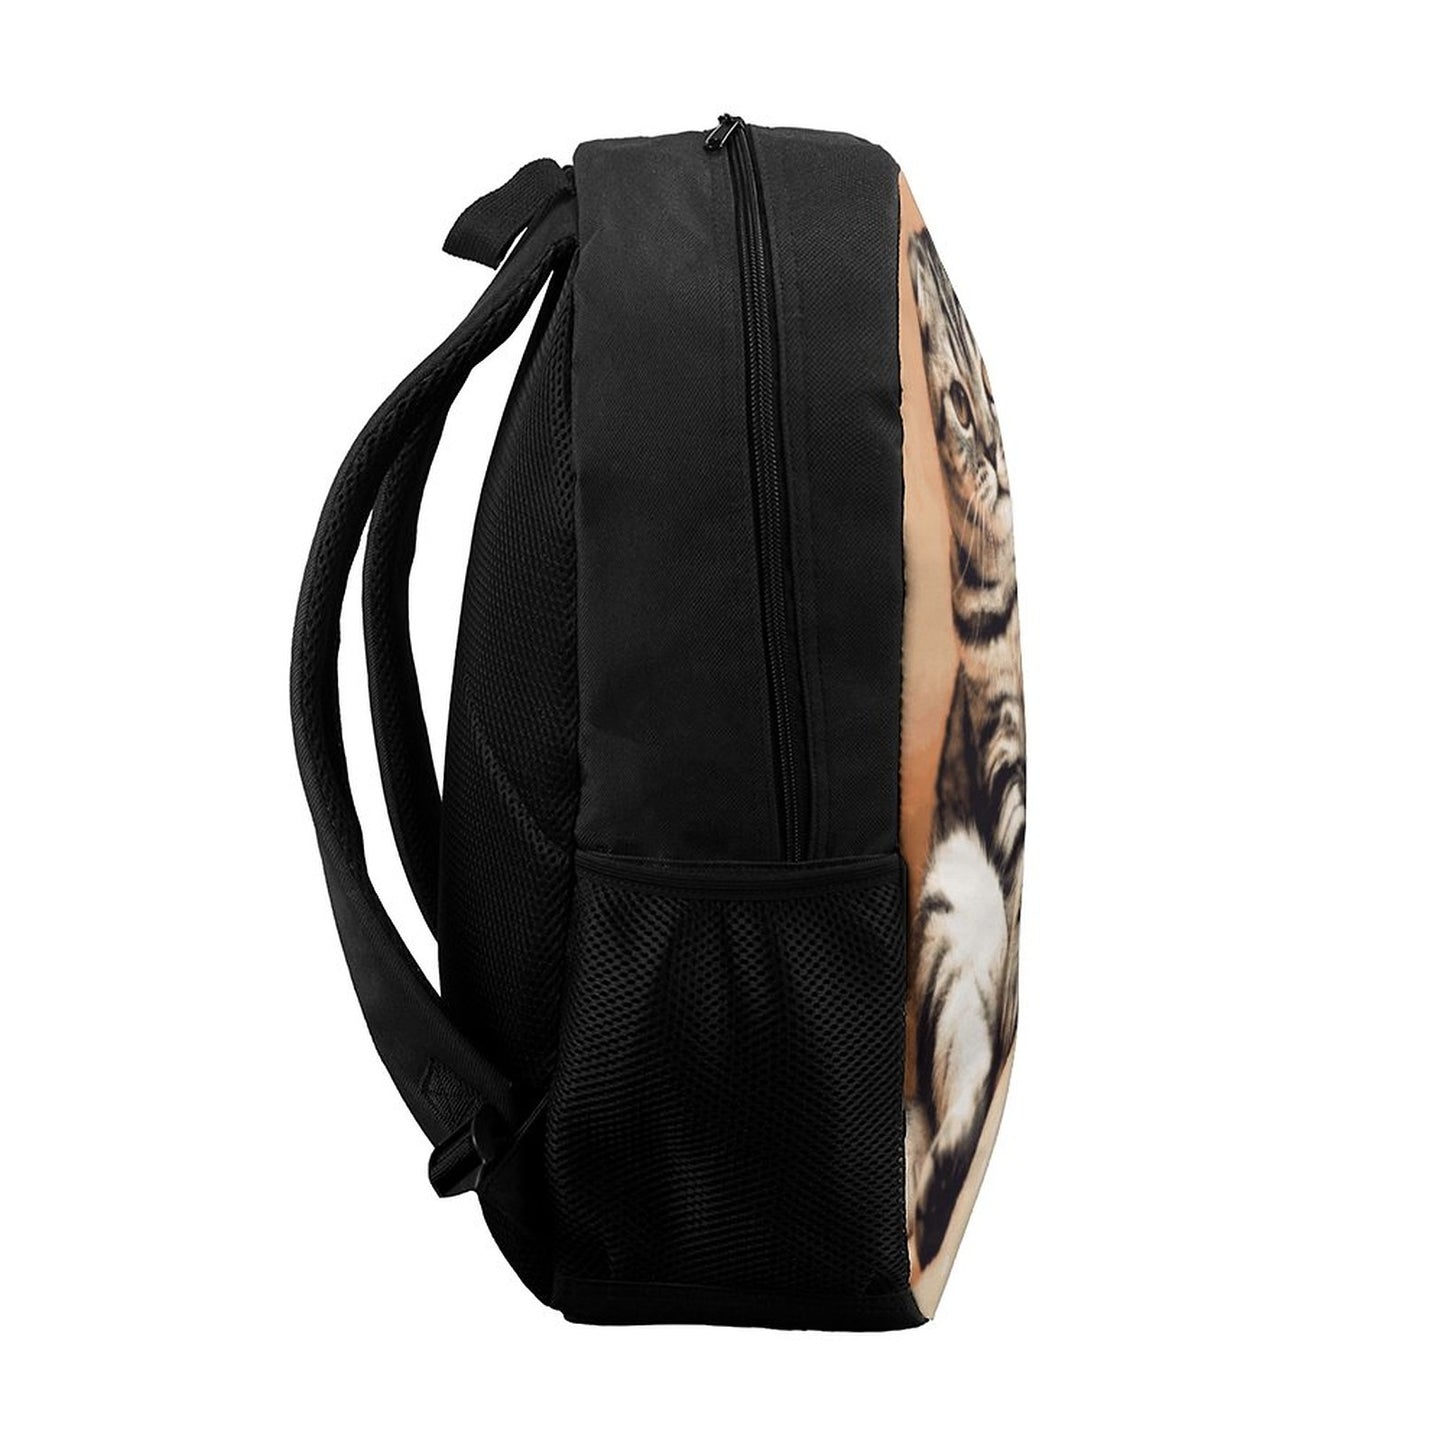 Online Custom 17 Inch Shoulder Backpack Cat Pet